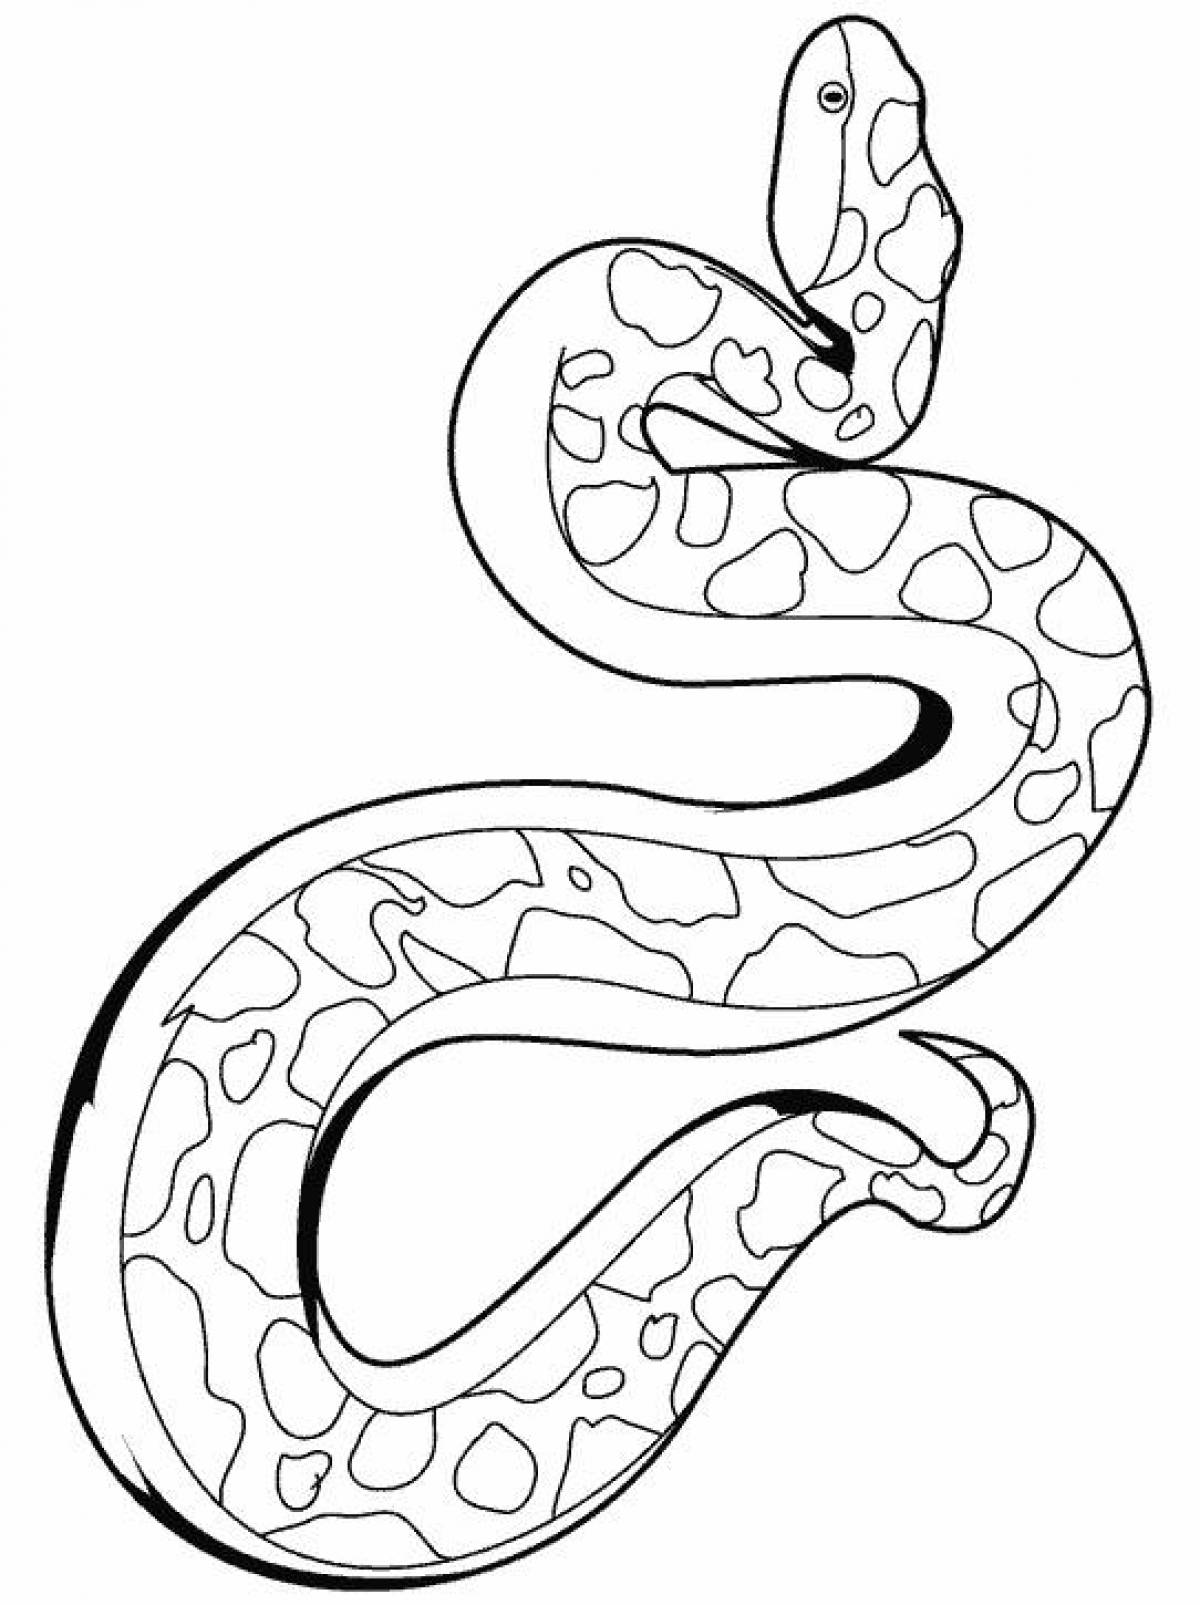 Раскраски змей распечатать. Королевский питон раскраска. Змея раскраска. Змея раскраска для детей. Раскраска змеи для детей.